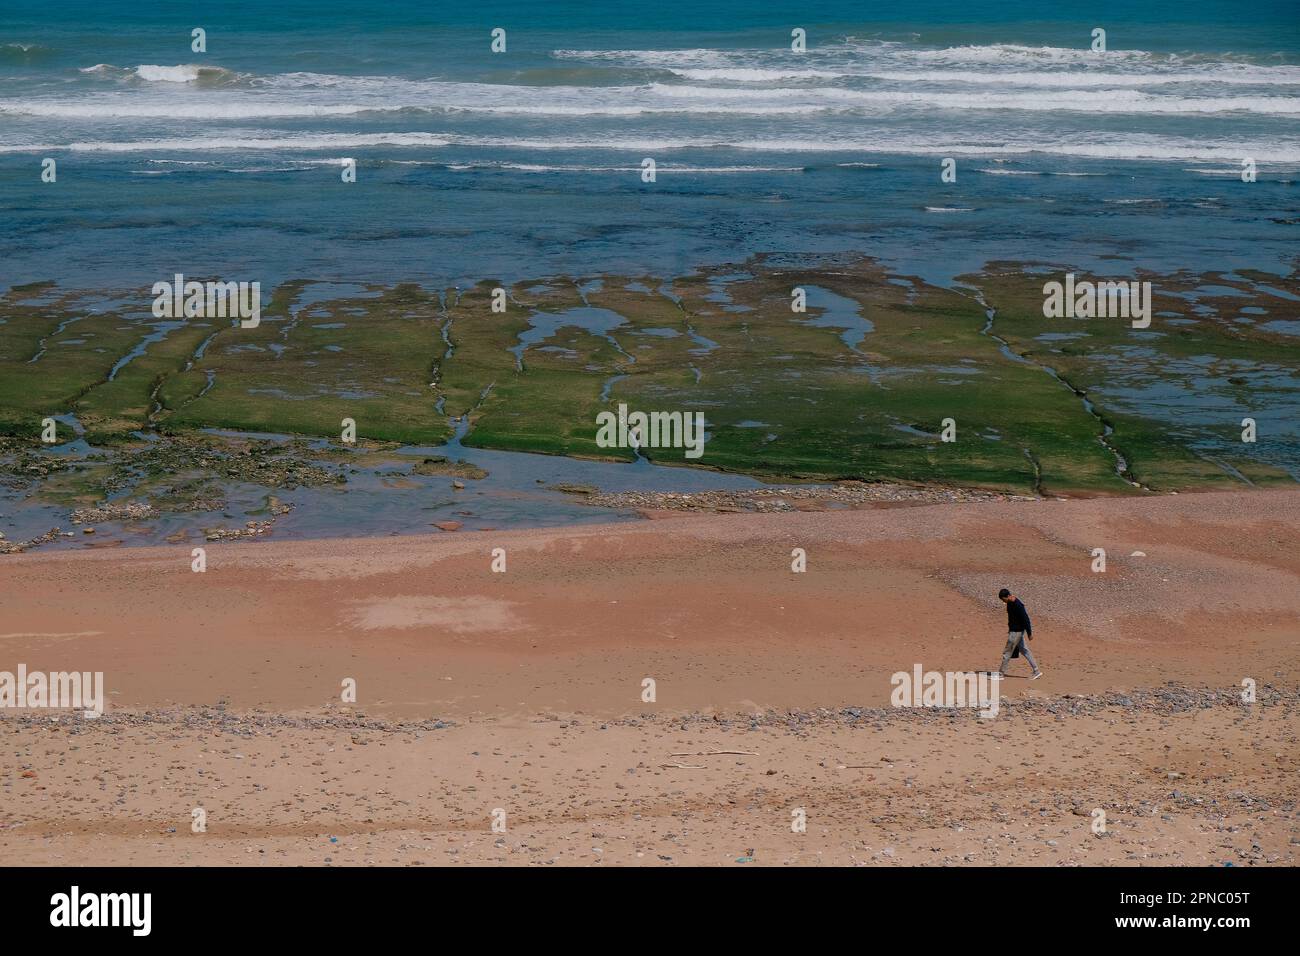 Sidi Ifni, Maroc - vue aérienne d'une journée sur la promenade d'un homme sur la côte de la plage. Sable orange brun, rivage rocheux recouvert de mousse verte, vagues bleues de l'océan Atlantique. Banque D'Images